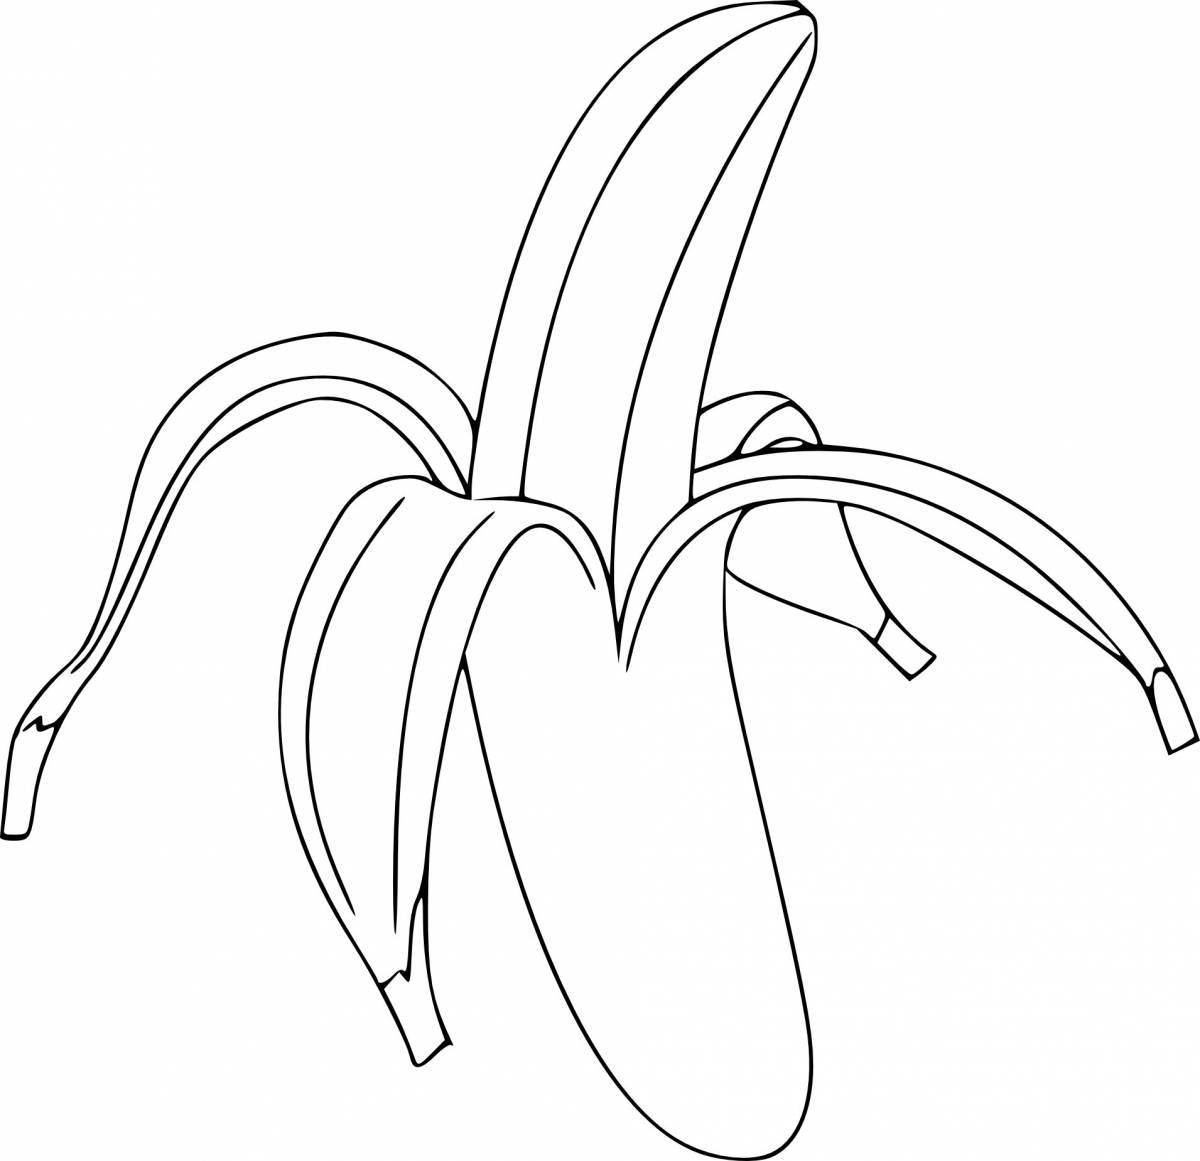 Веселая раскраска банан для детей 3-4 лет